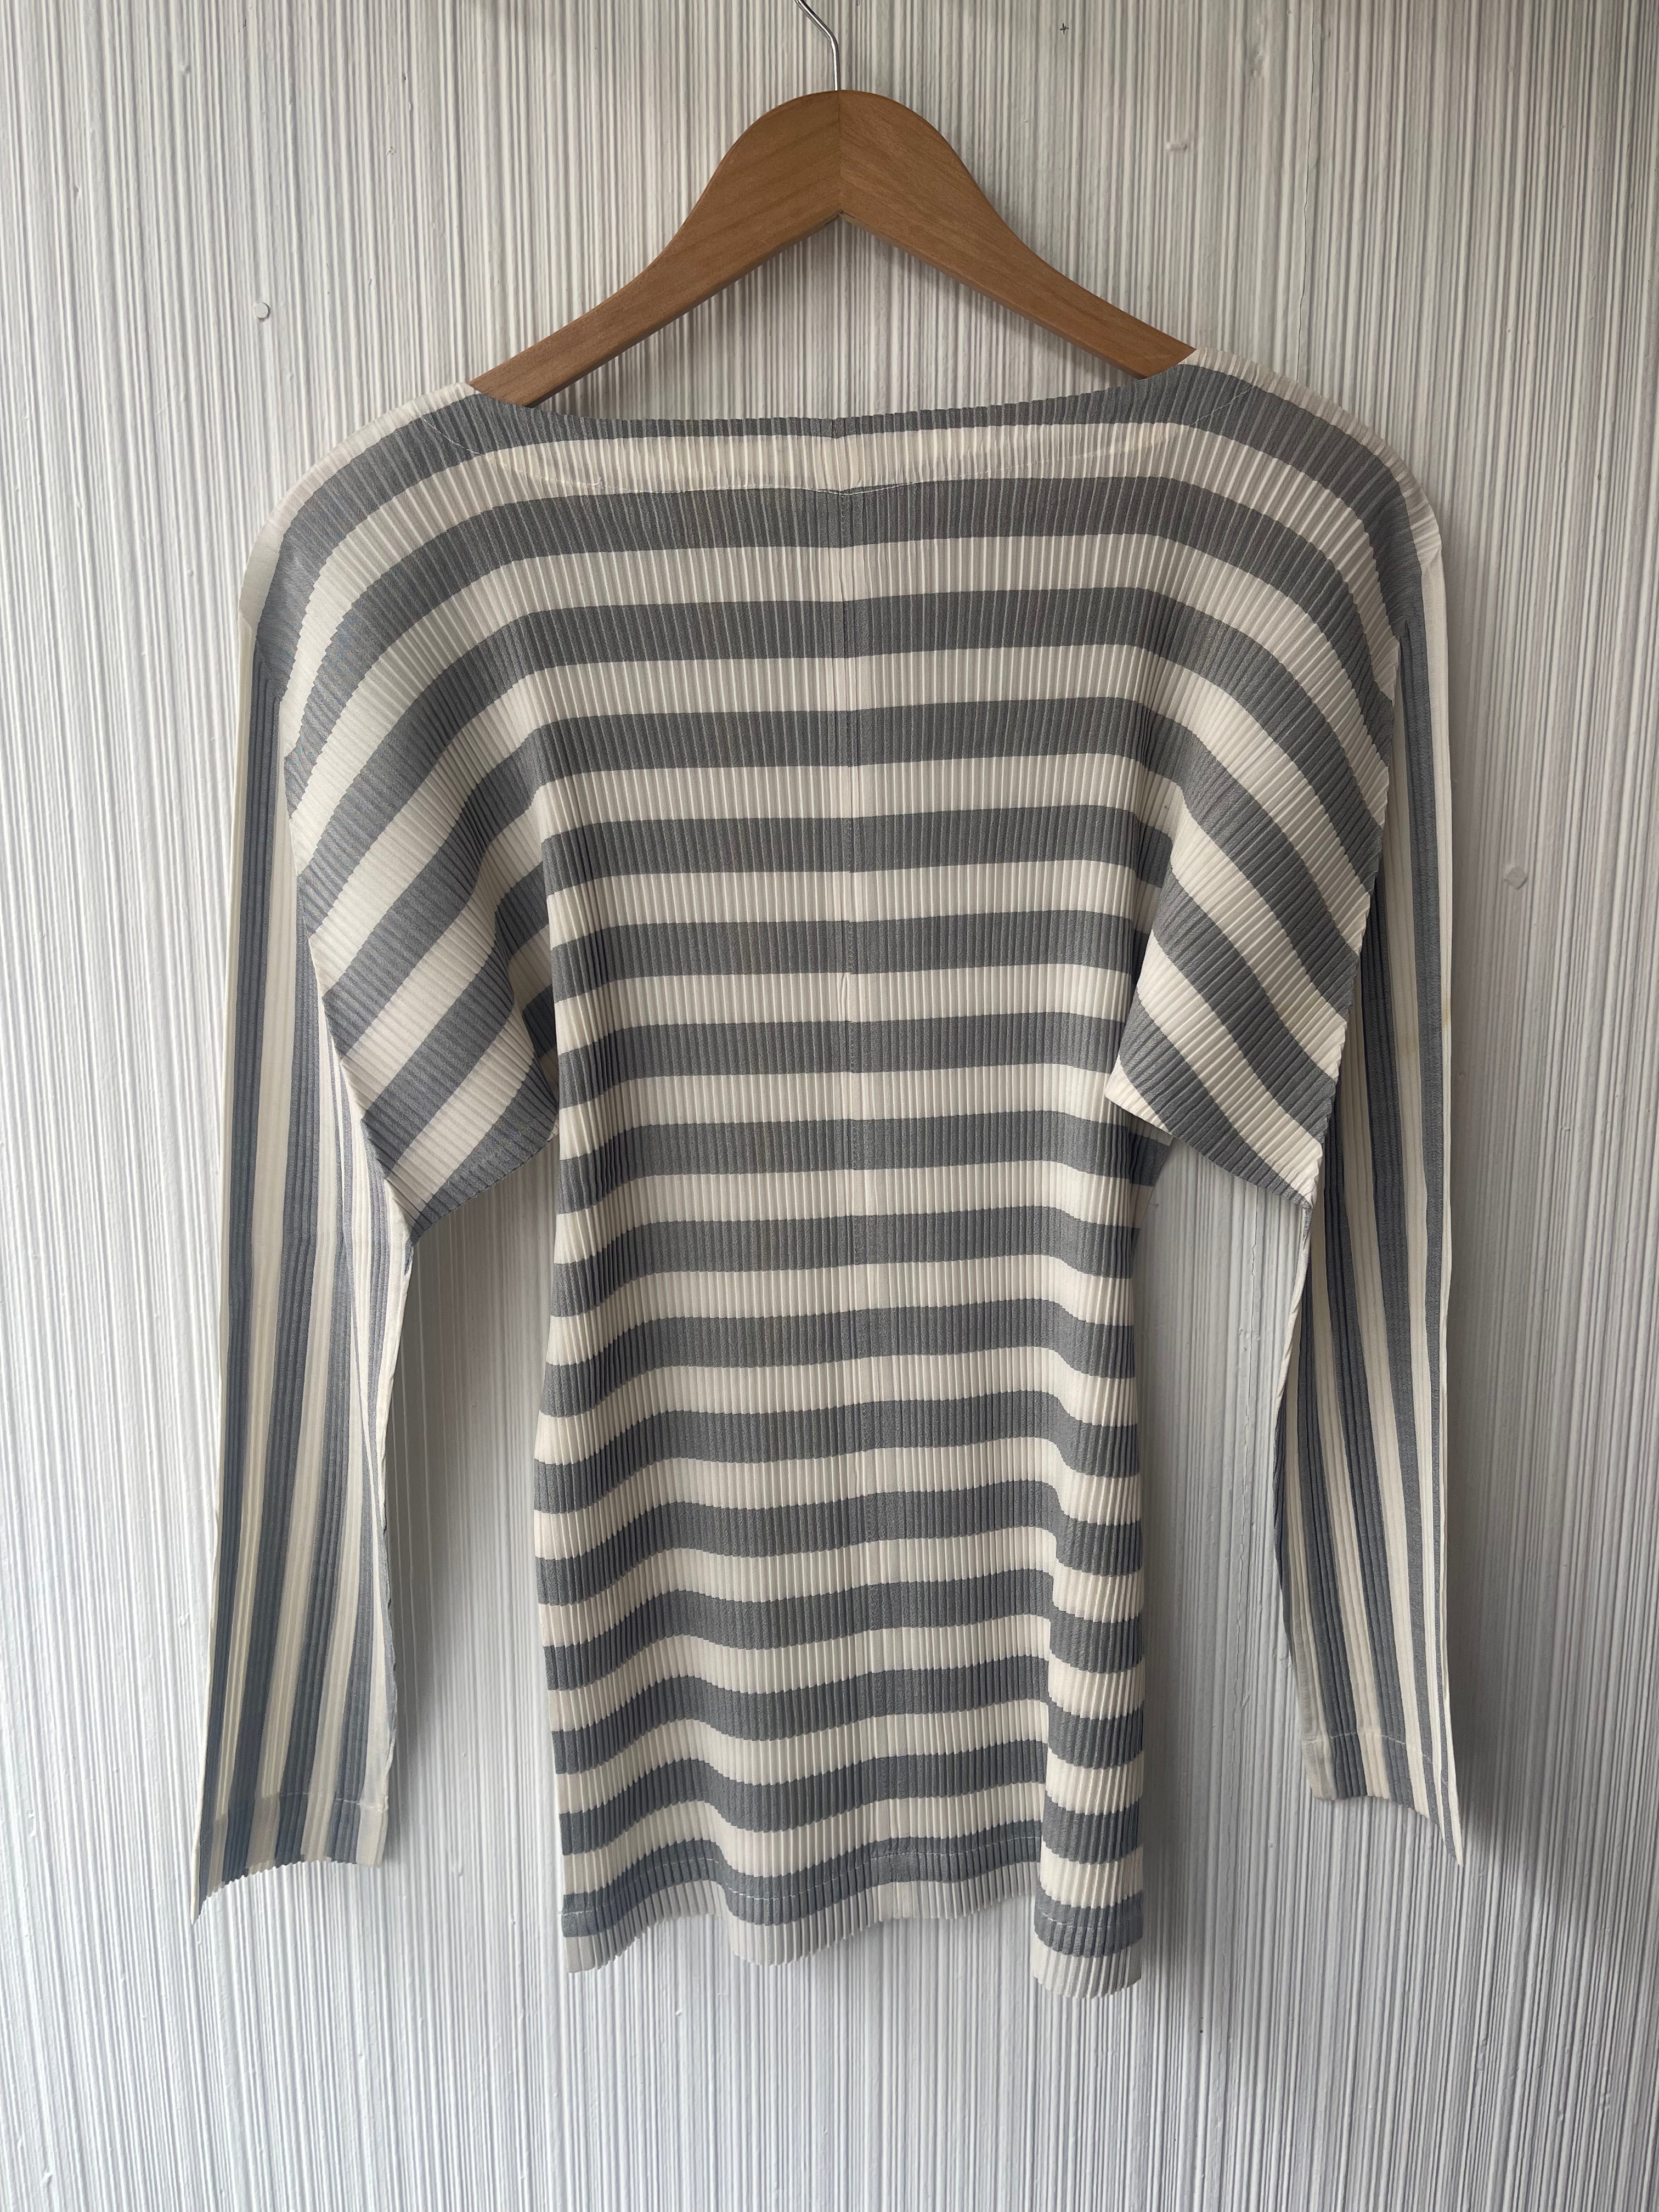 Issey Miyake grey horizontal stripe top